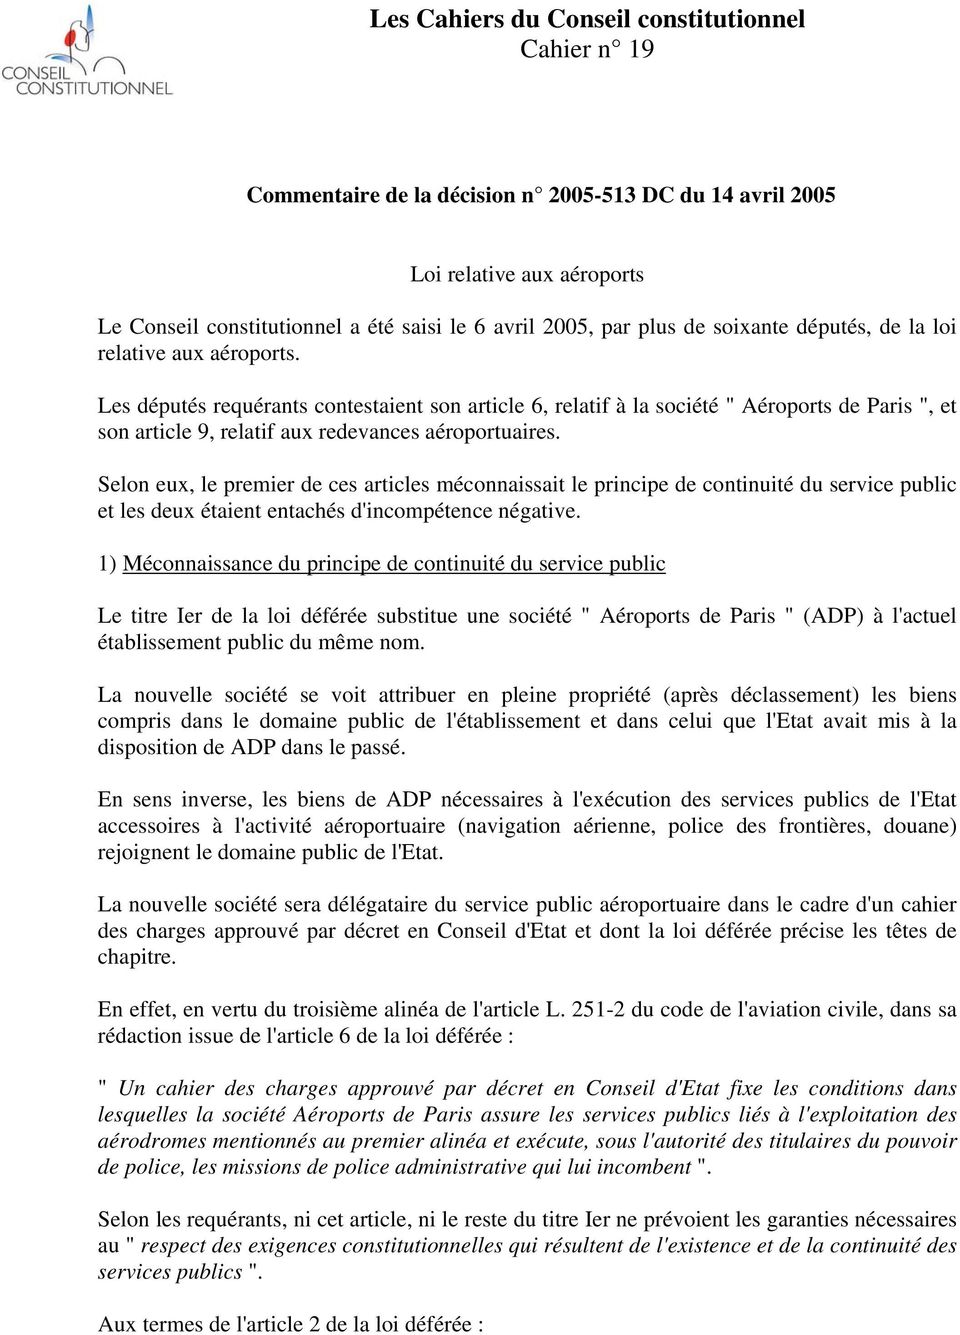 Les députés requérants contestaient son article 6, relatif à la société " Aéroports de Paris ", et son article 9, relatif aux redevances aéroportuaires.